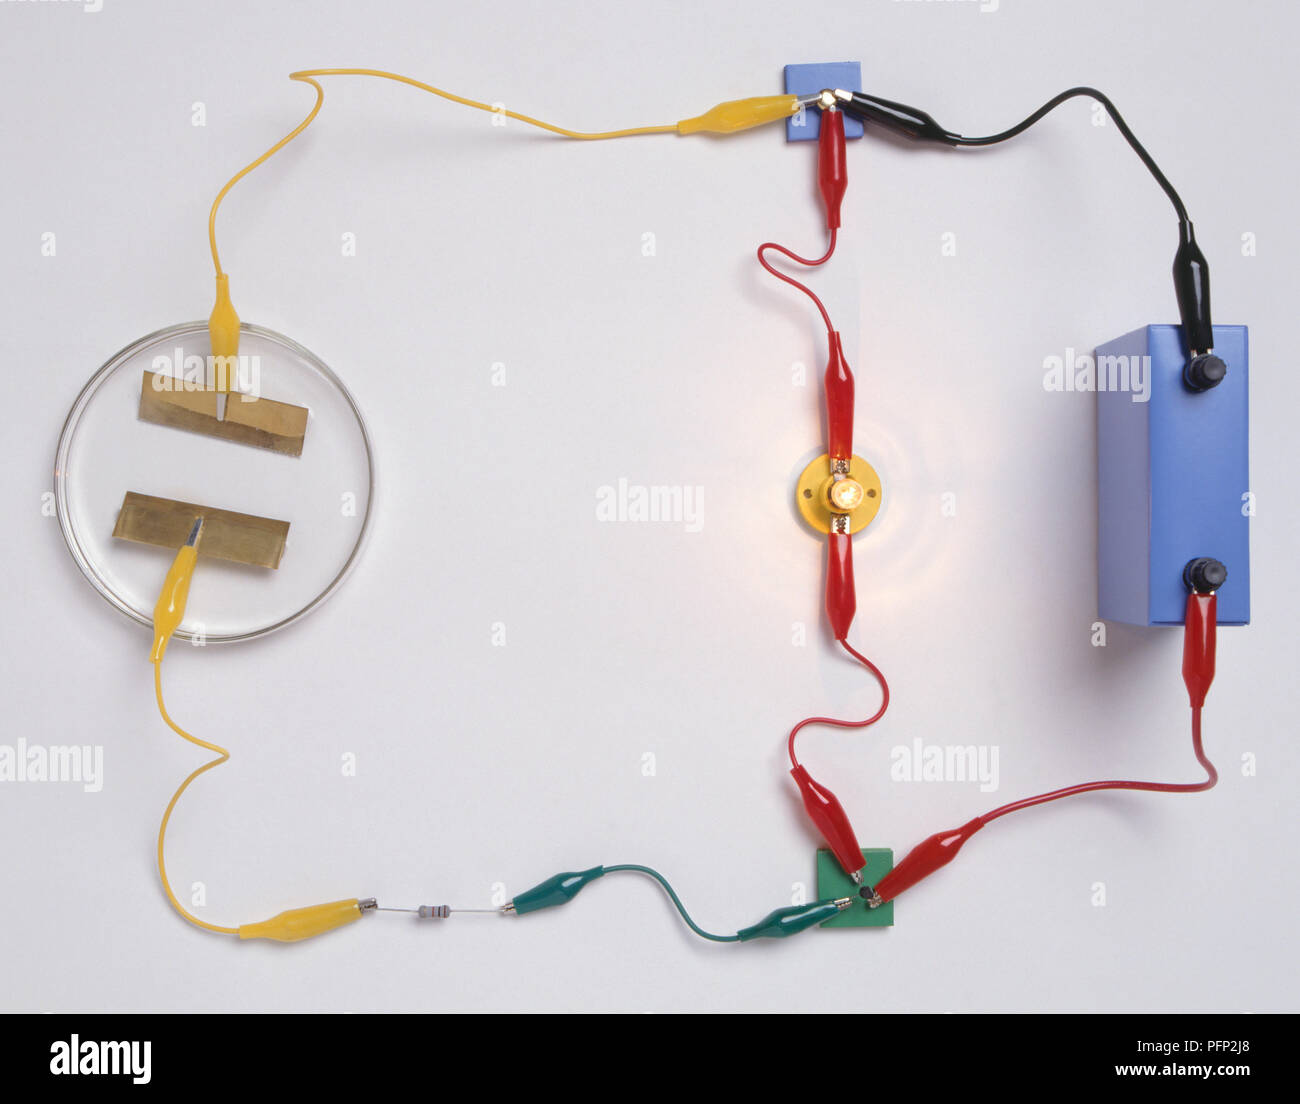 Un simple circuit électronique utilisé pour détecter la présence d'eau, composé d'une batterie, d'un connecteur trois voies, les électrodes en cuivre immergé dans l'eau, résistance, lampe et transistor Banque D'Images